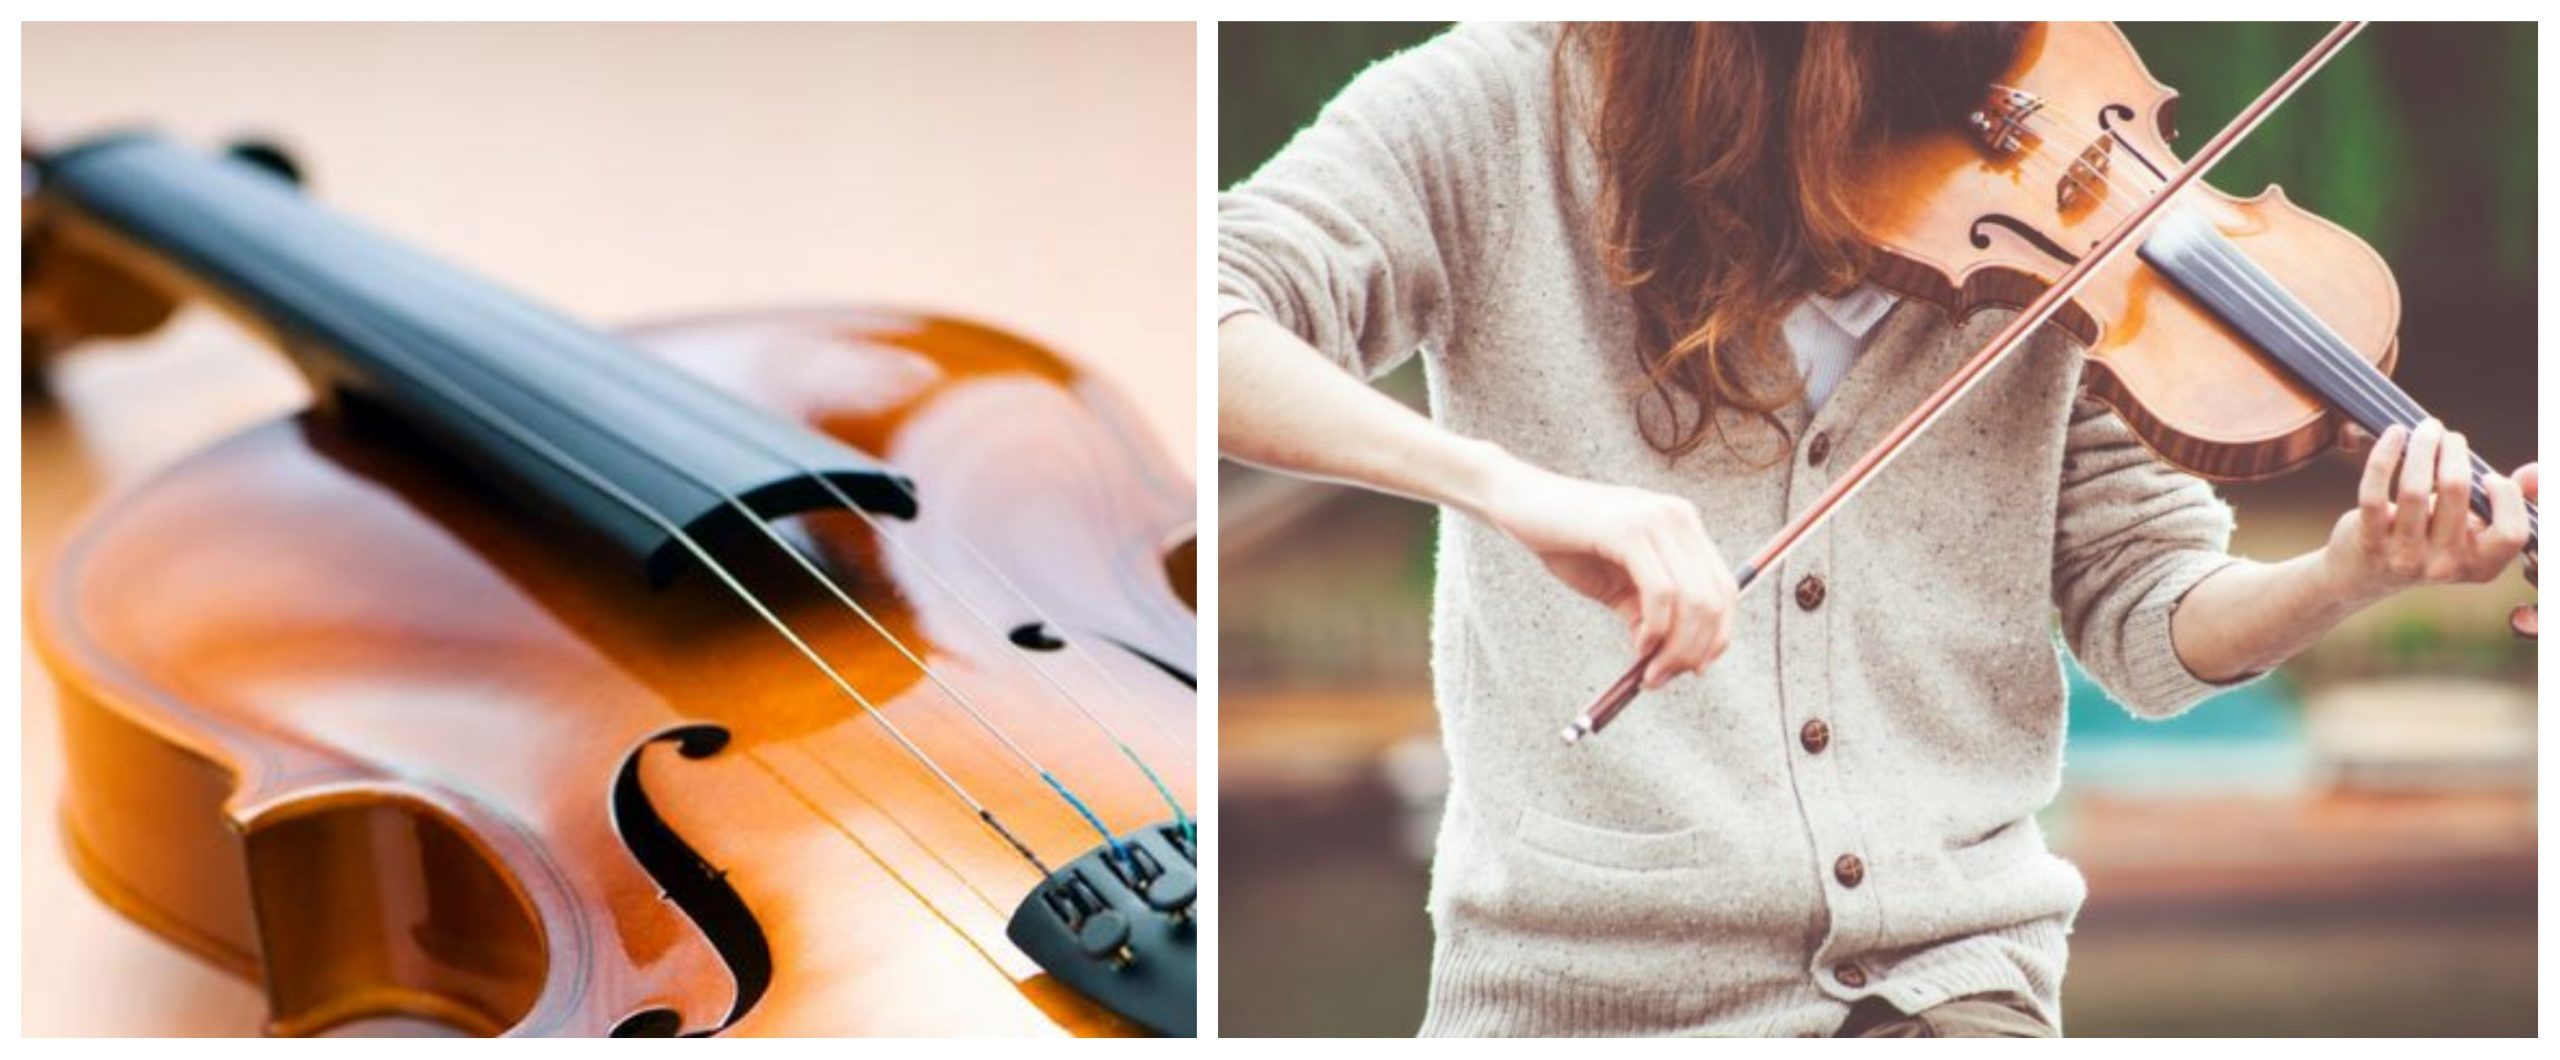 فوائد الموسيقى لجسم الإنسان – تقوي الذاكرة والمناعة